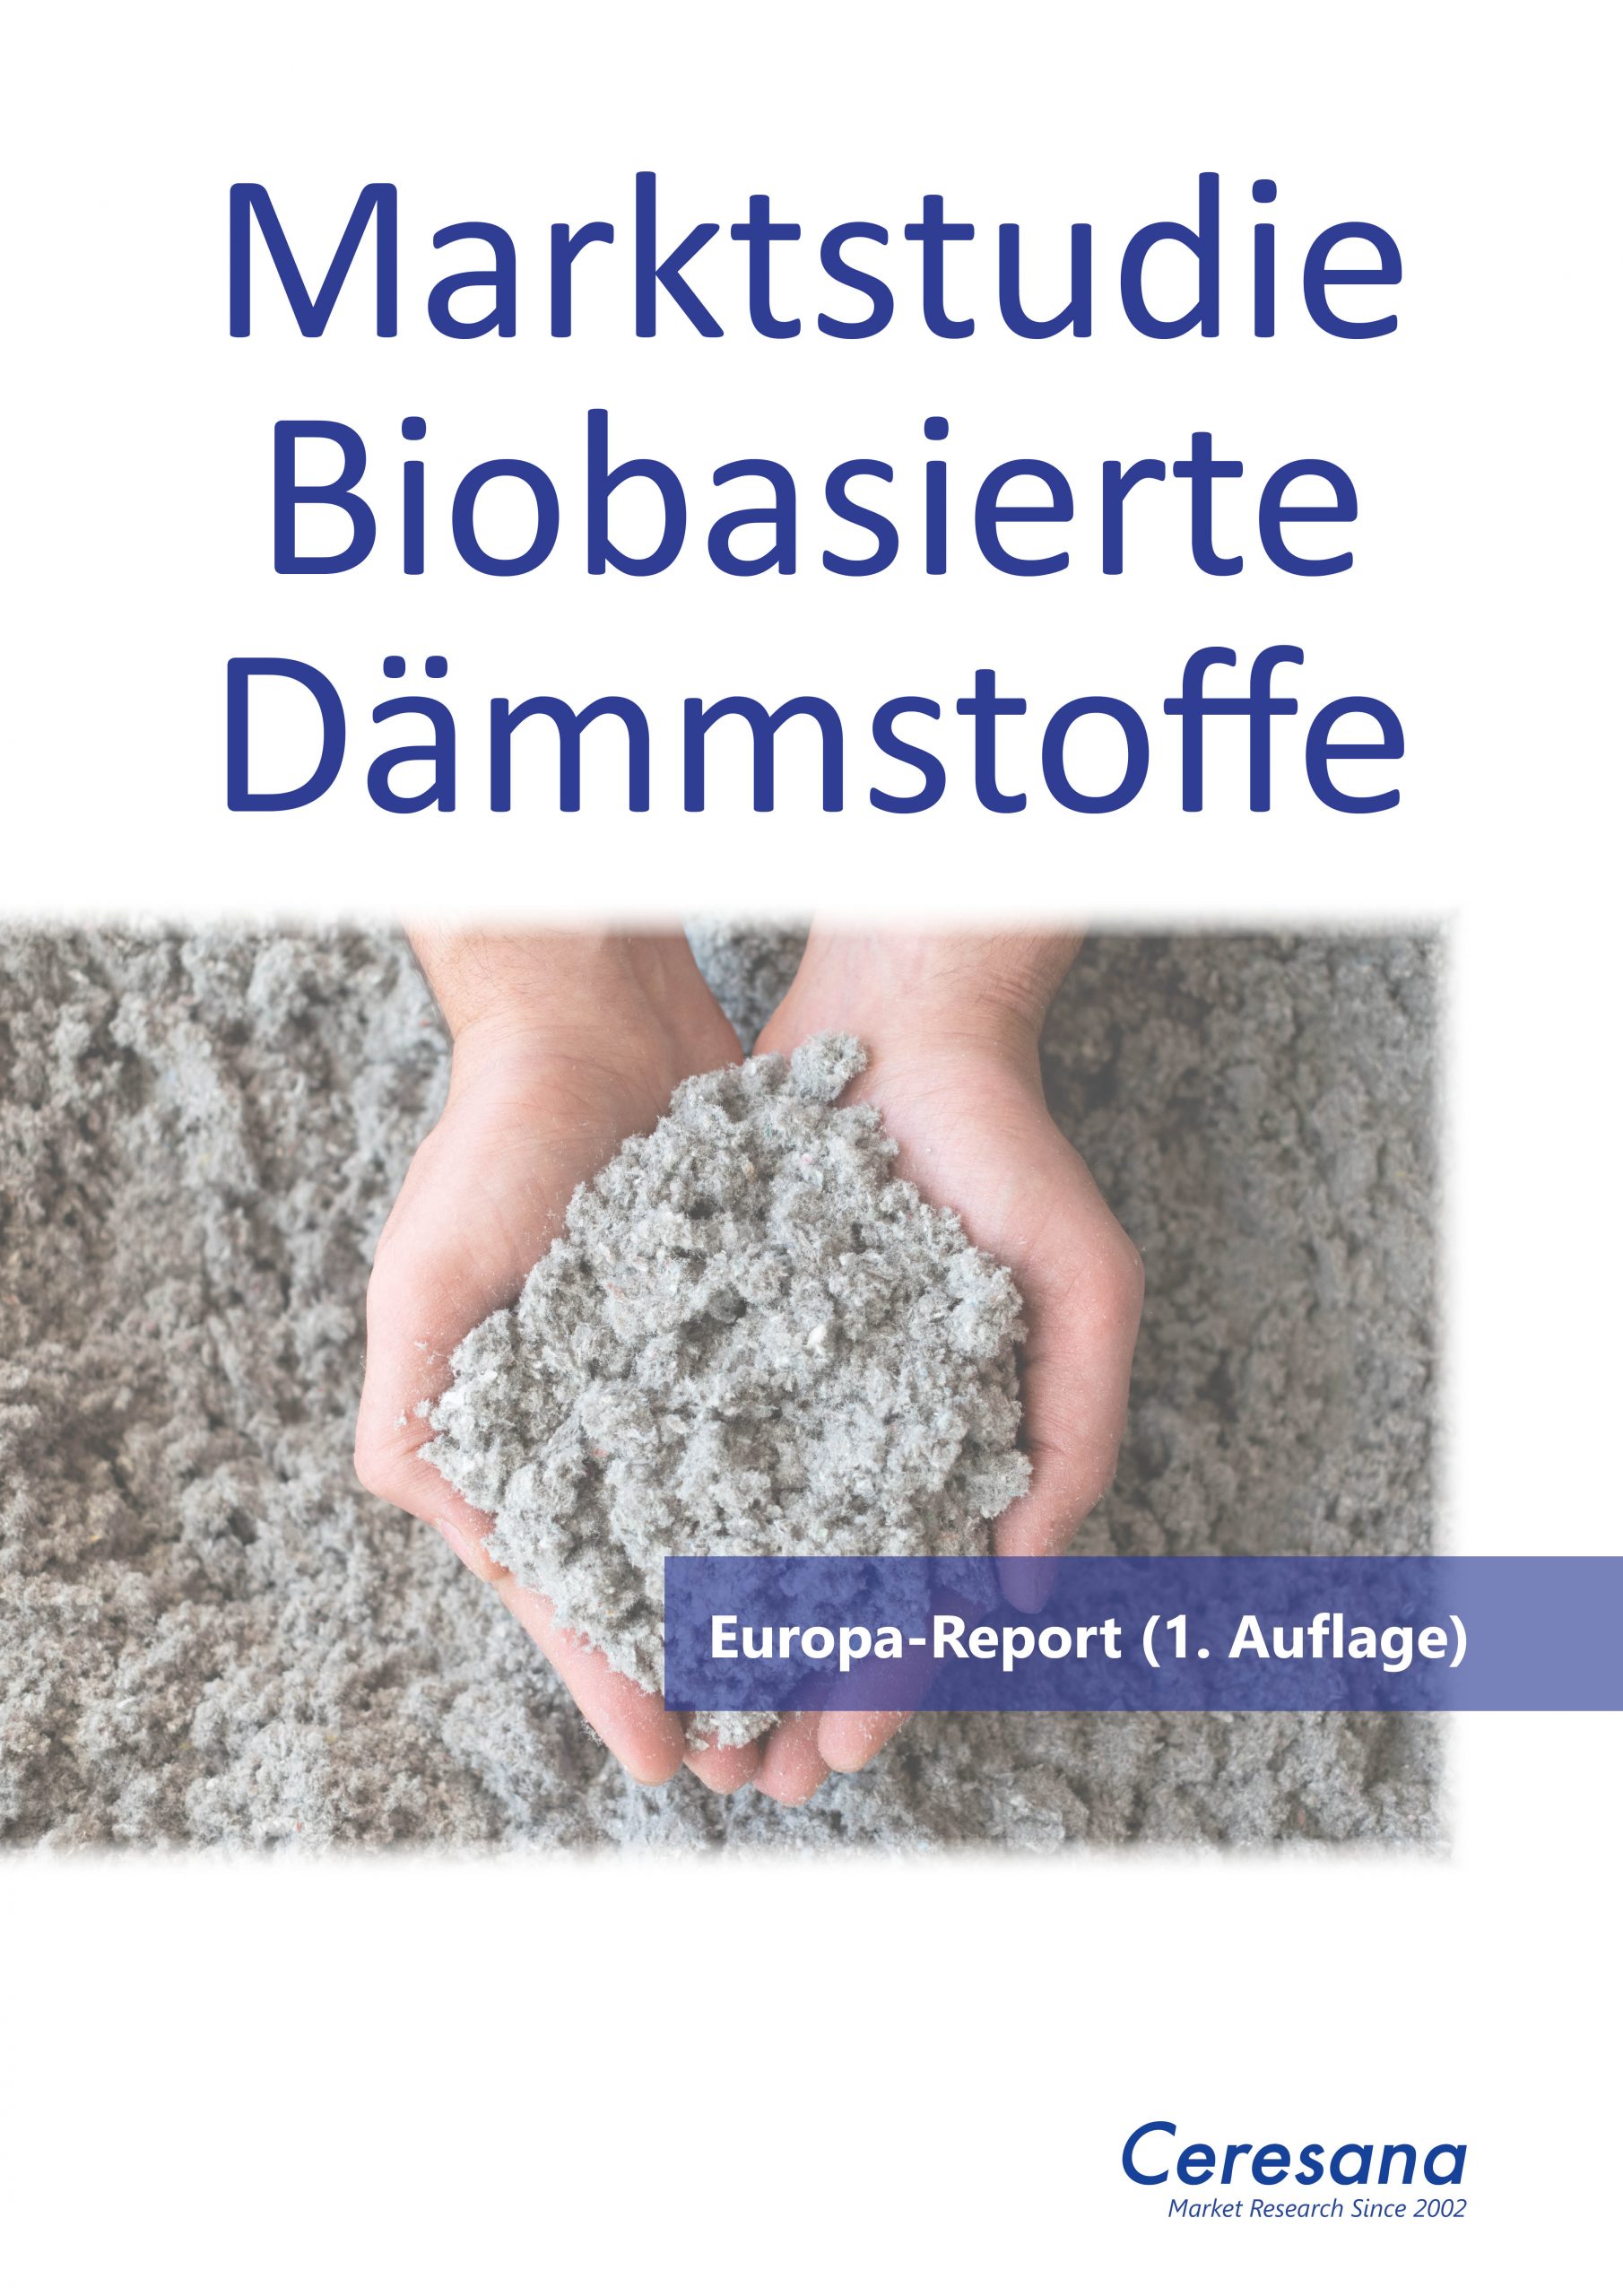 Deutsche-Politik-News.de | Marktstudie Biobasierte Dmmstoffe